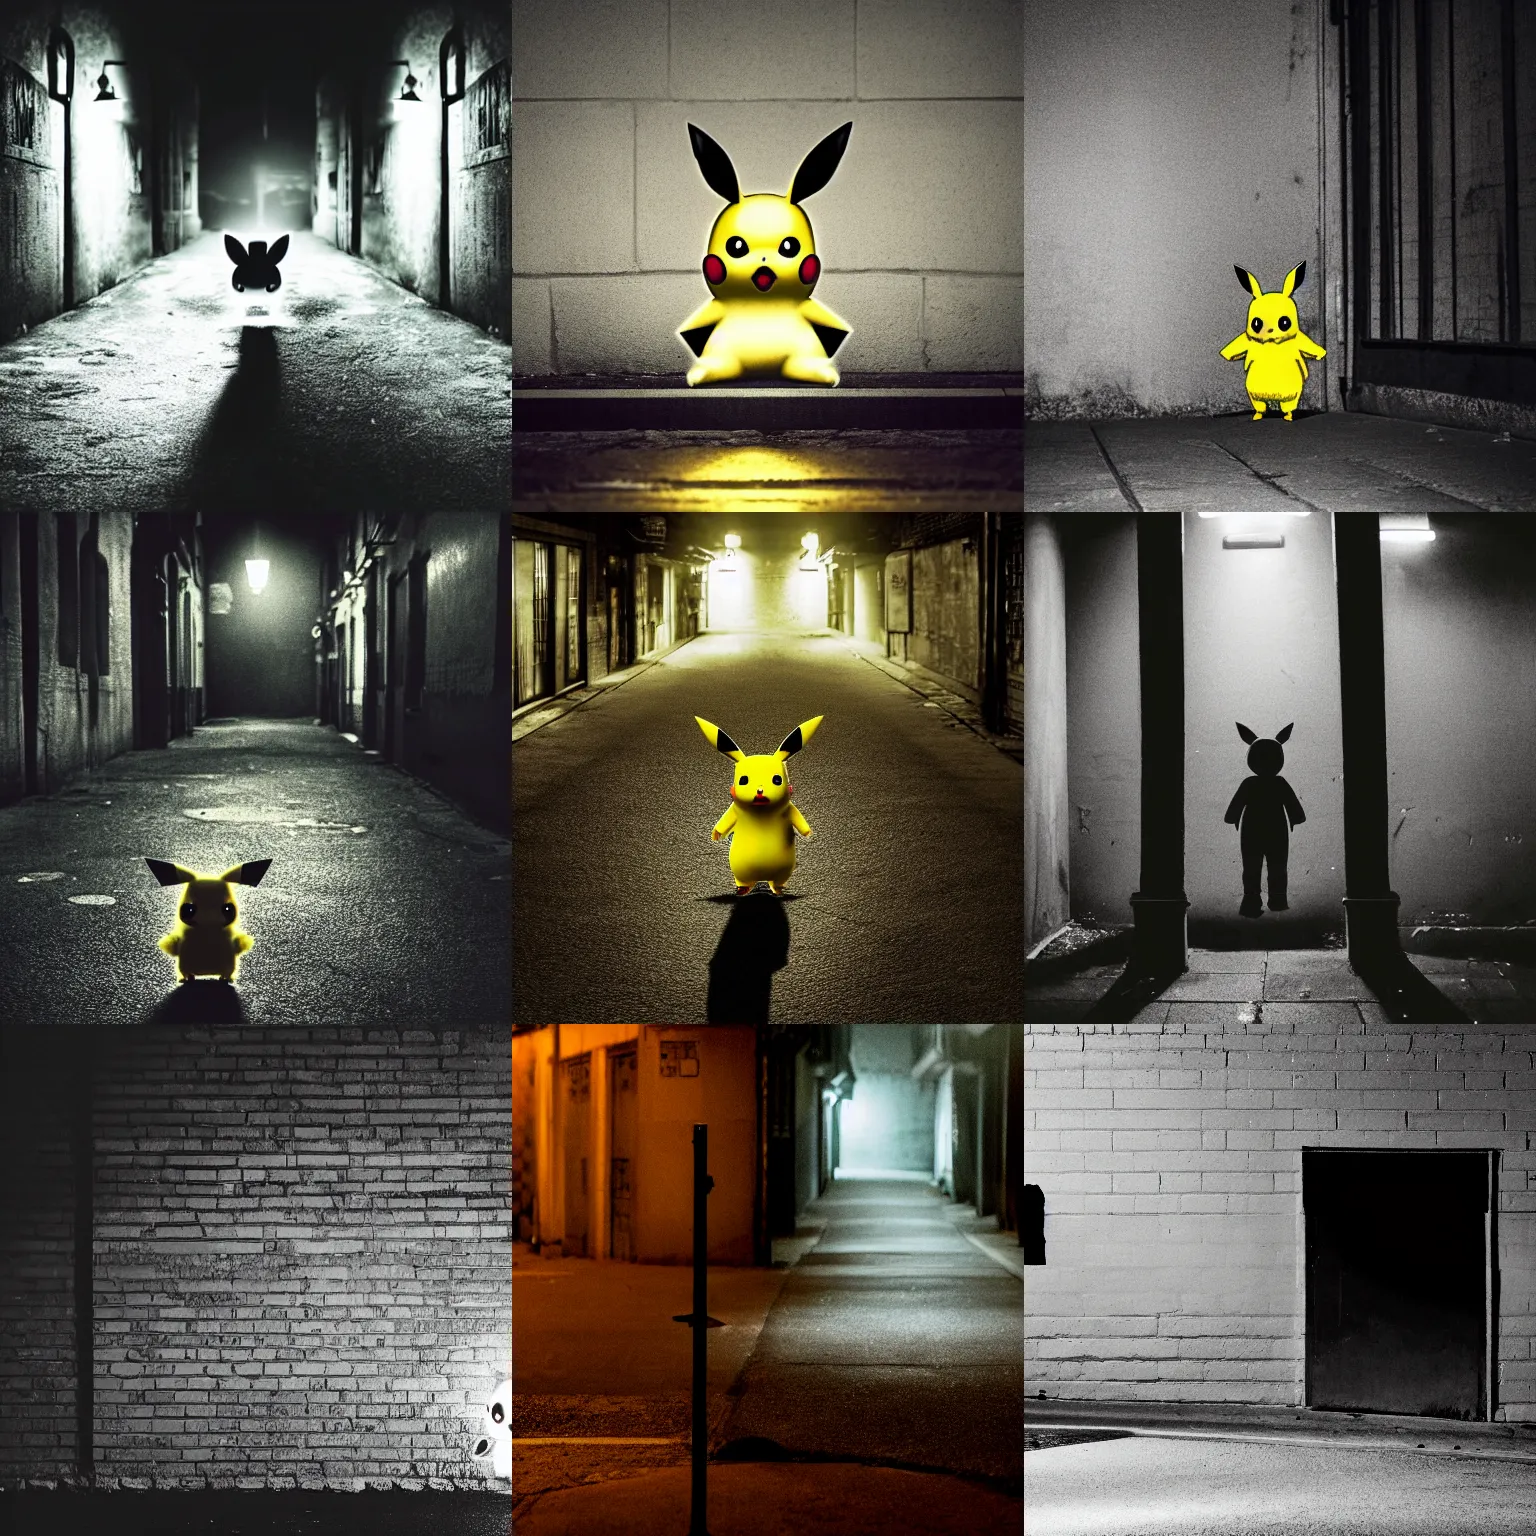 Pokémon - City Back Alley At Night - Noctali